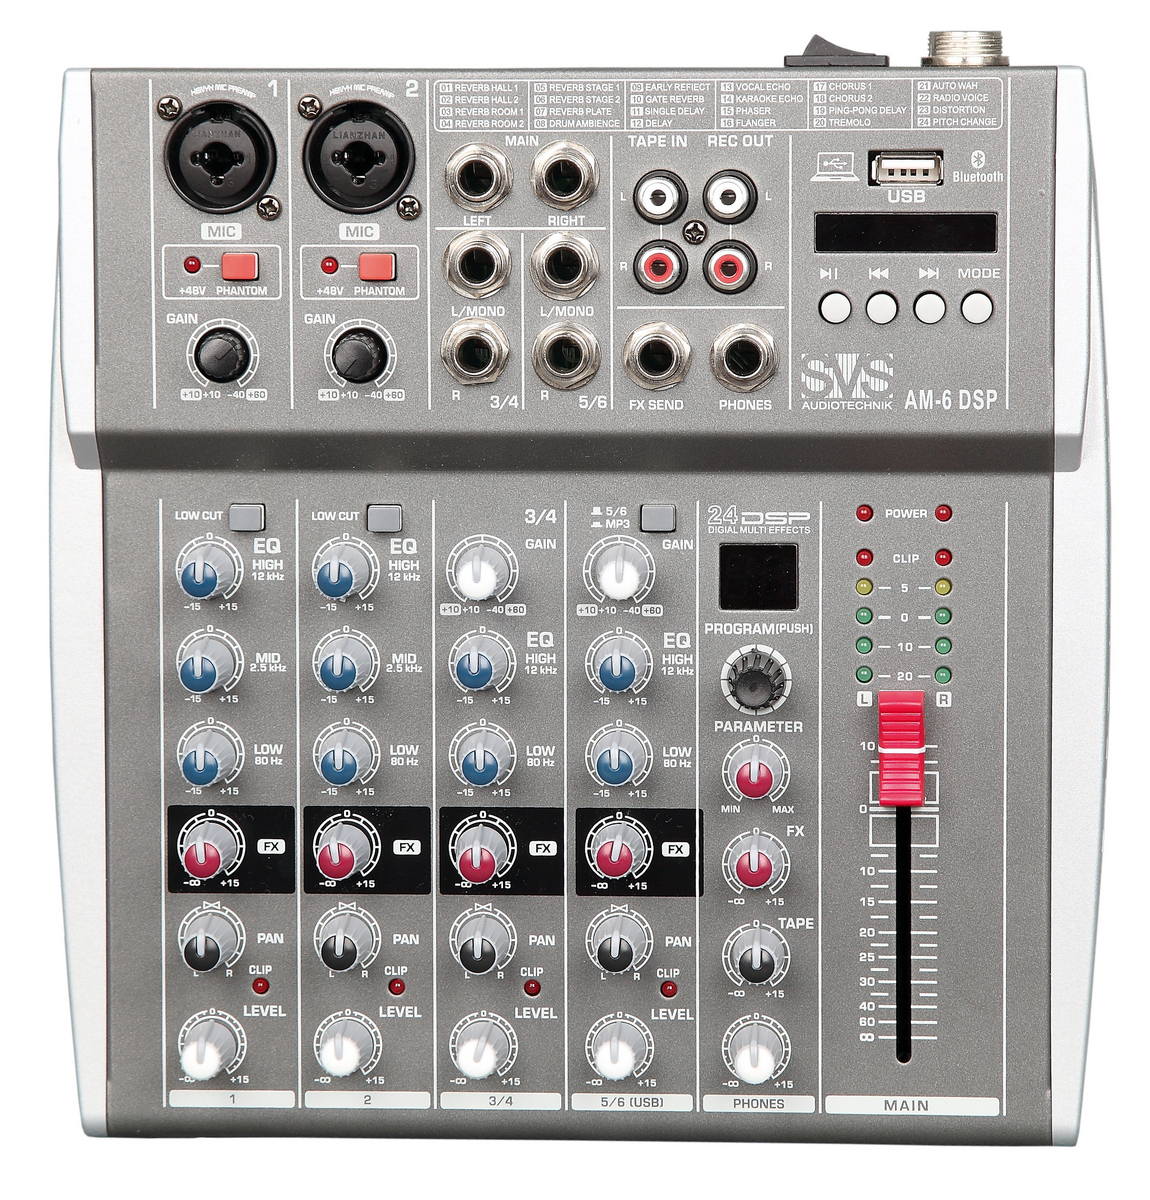 Микшерные пульты аналоговые SVS Audiotechnik mixers AM-6 DSP микшерные пульты аналоговые svs audiotechnik mixers am 6 dsp